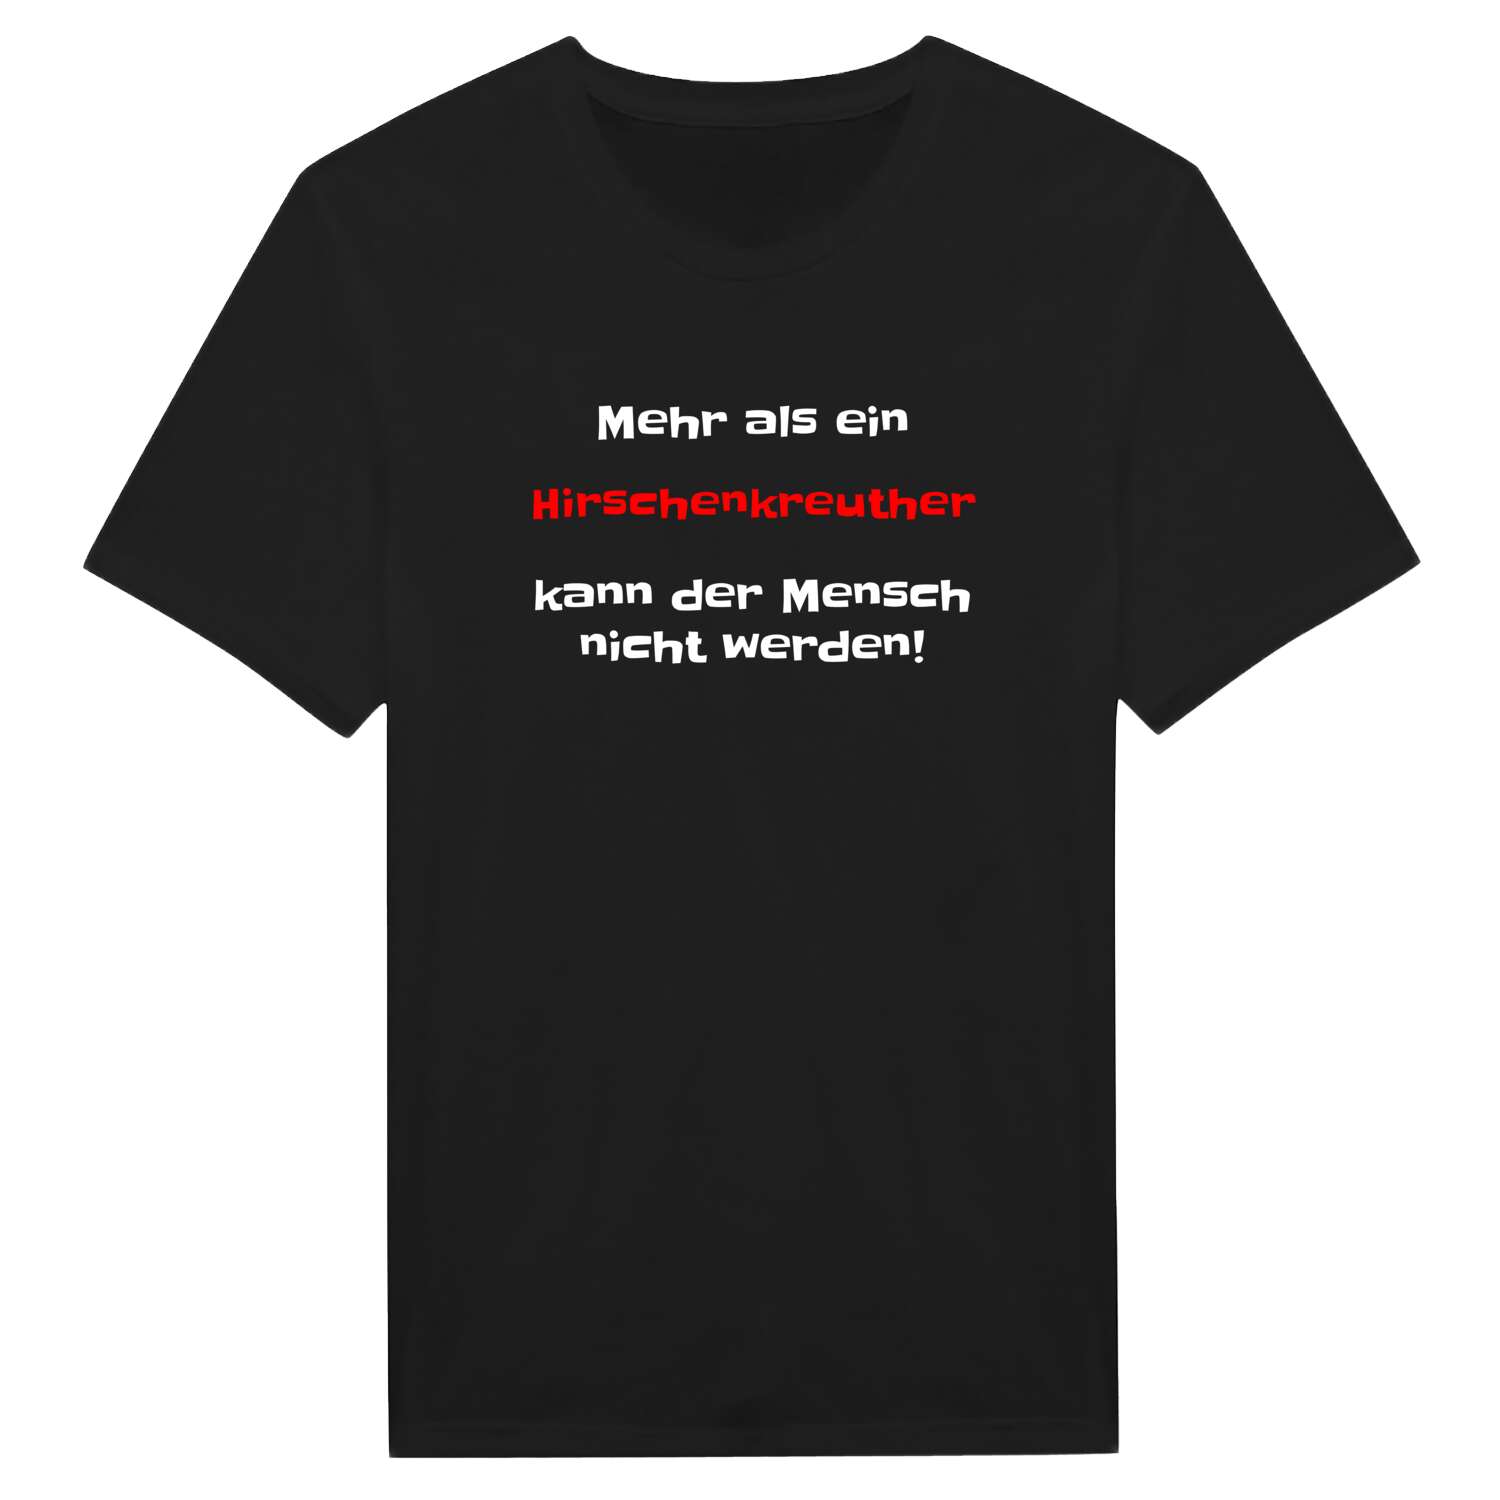 Hirschenkreuth T-Shirt »Mehr als ein«